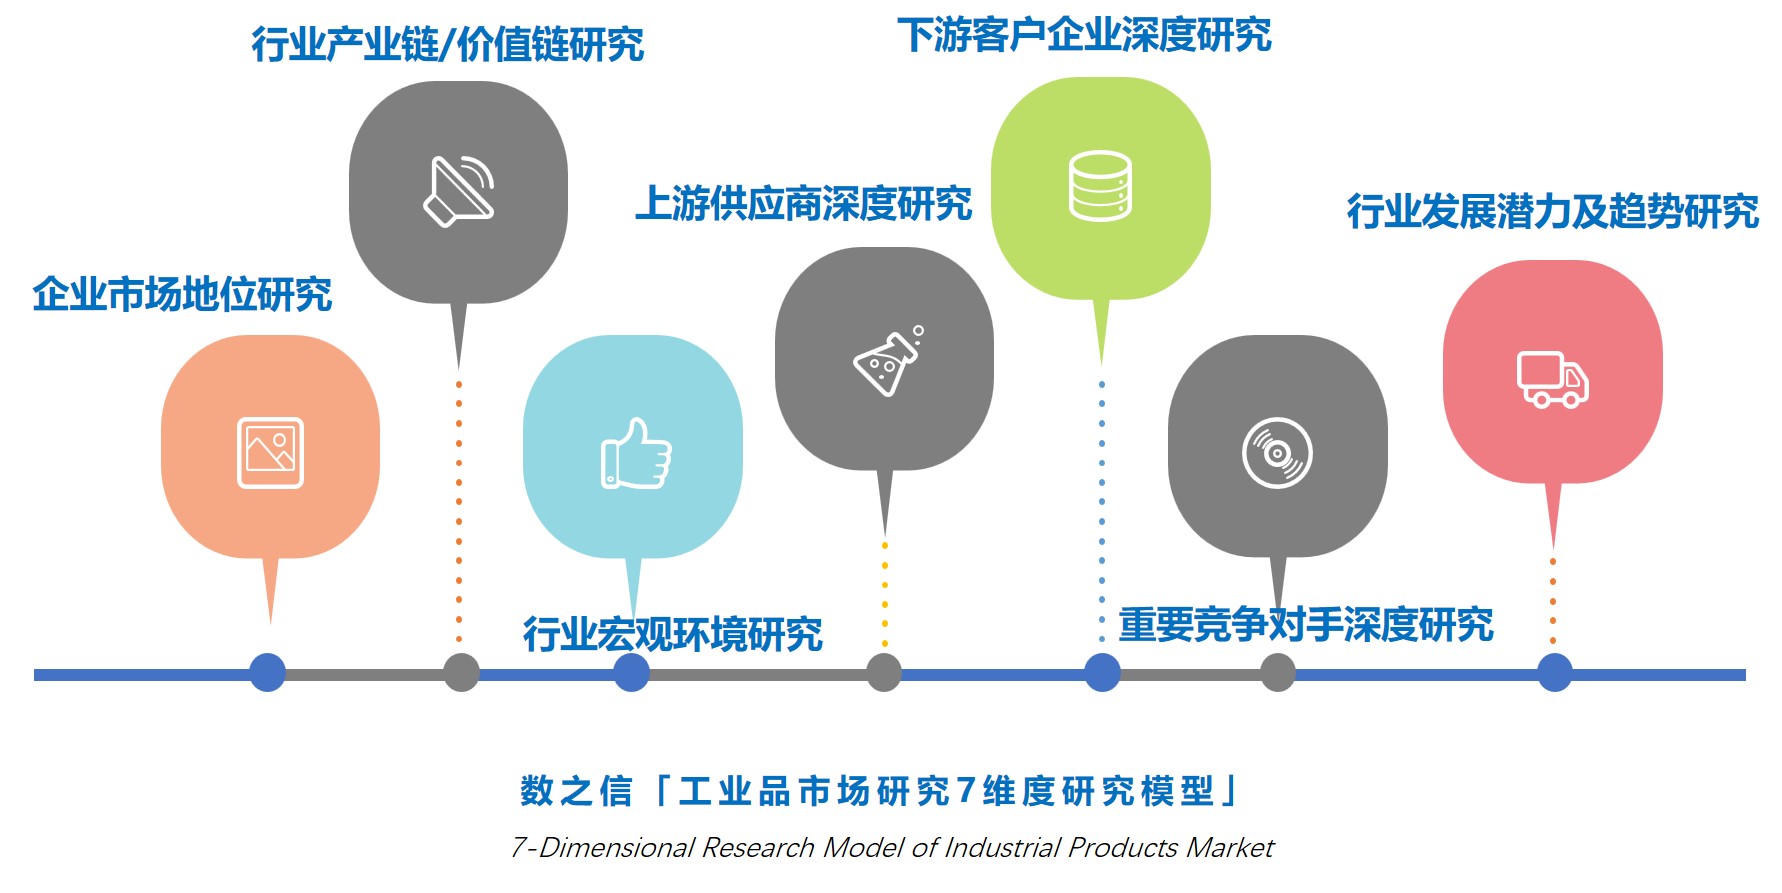 工业品市场研究7维度研究模型,数之信南京市场调查公司工业品市场发展机会及潜力研究整体解决方案.jpg